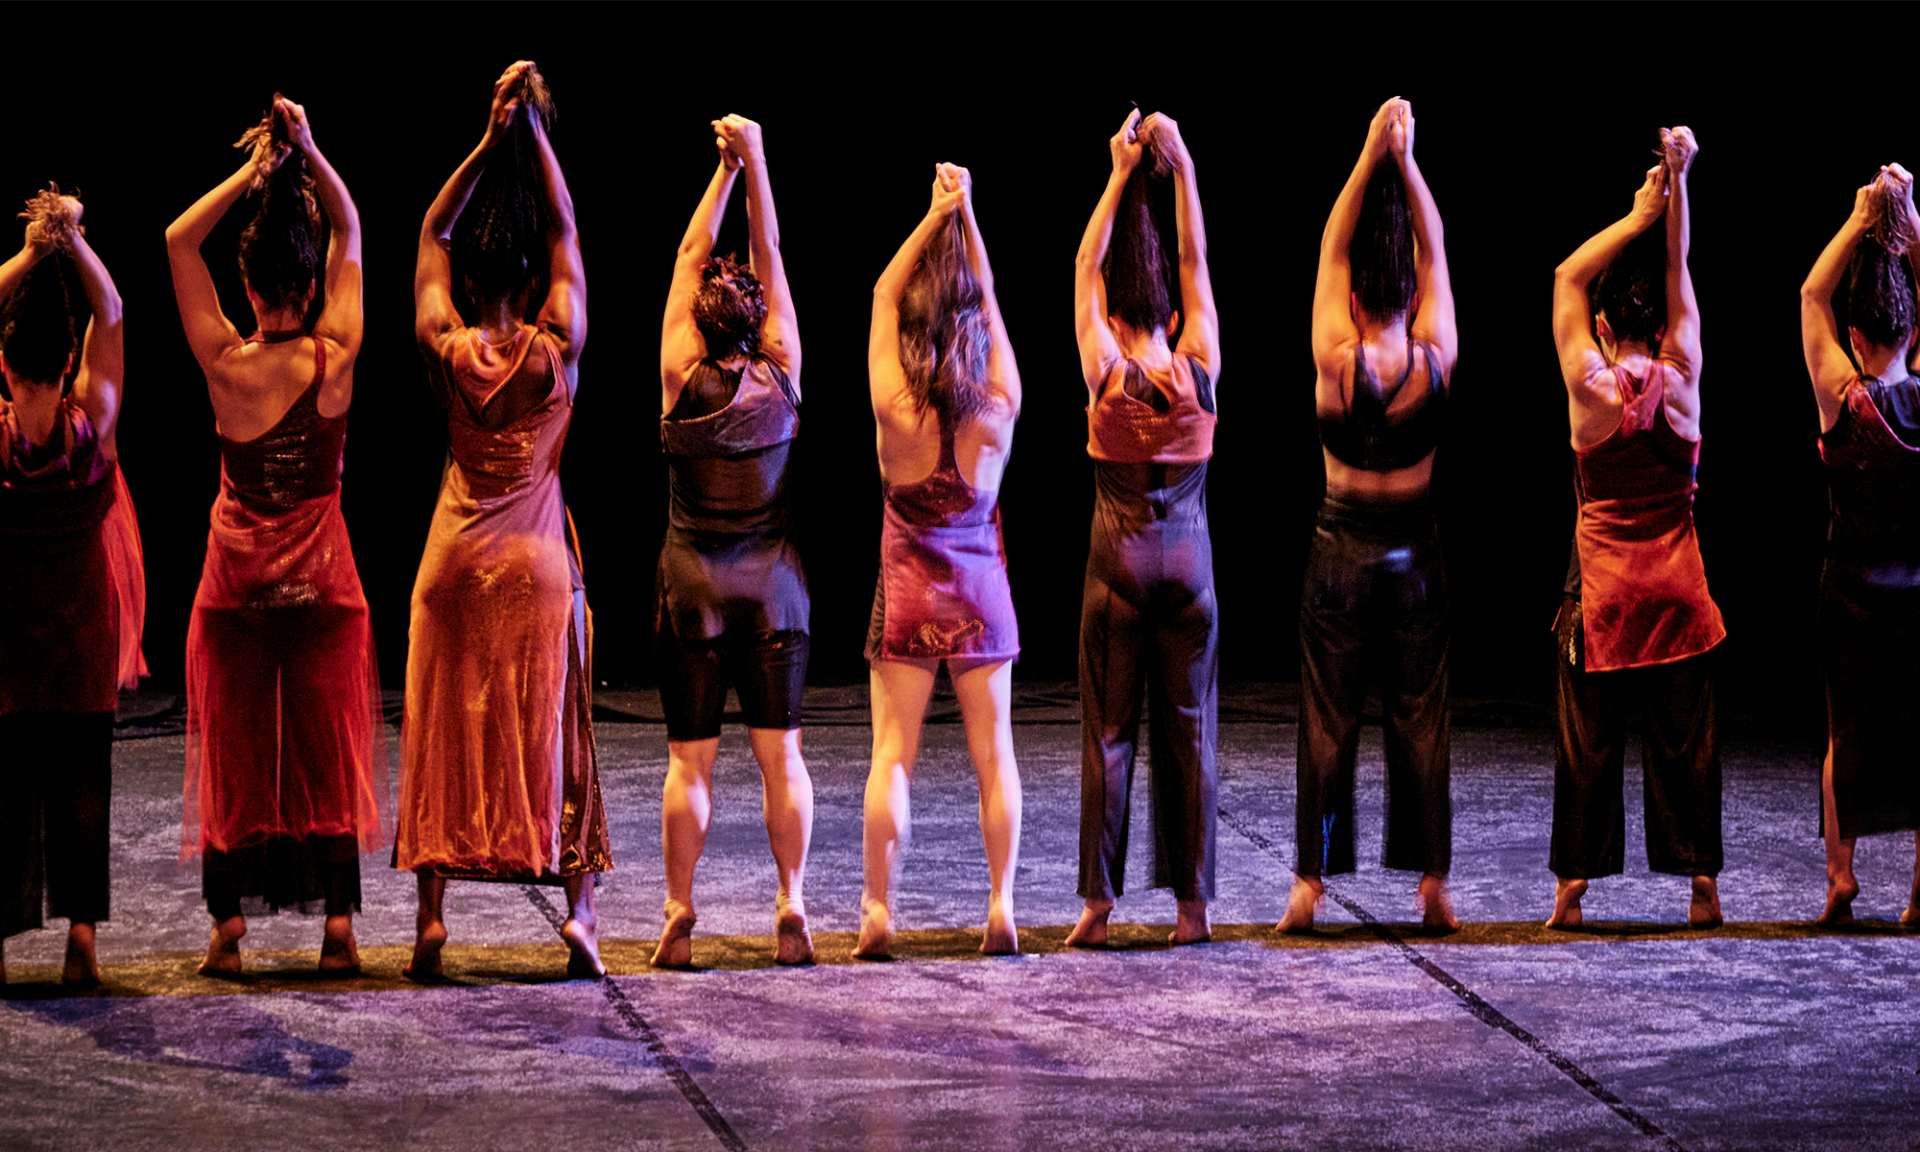 Photo du spectacle "Fêu" où les danseuses se tiennent de dos, tendant leurs cheveux au dessus de leur tête